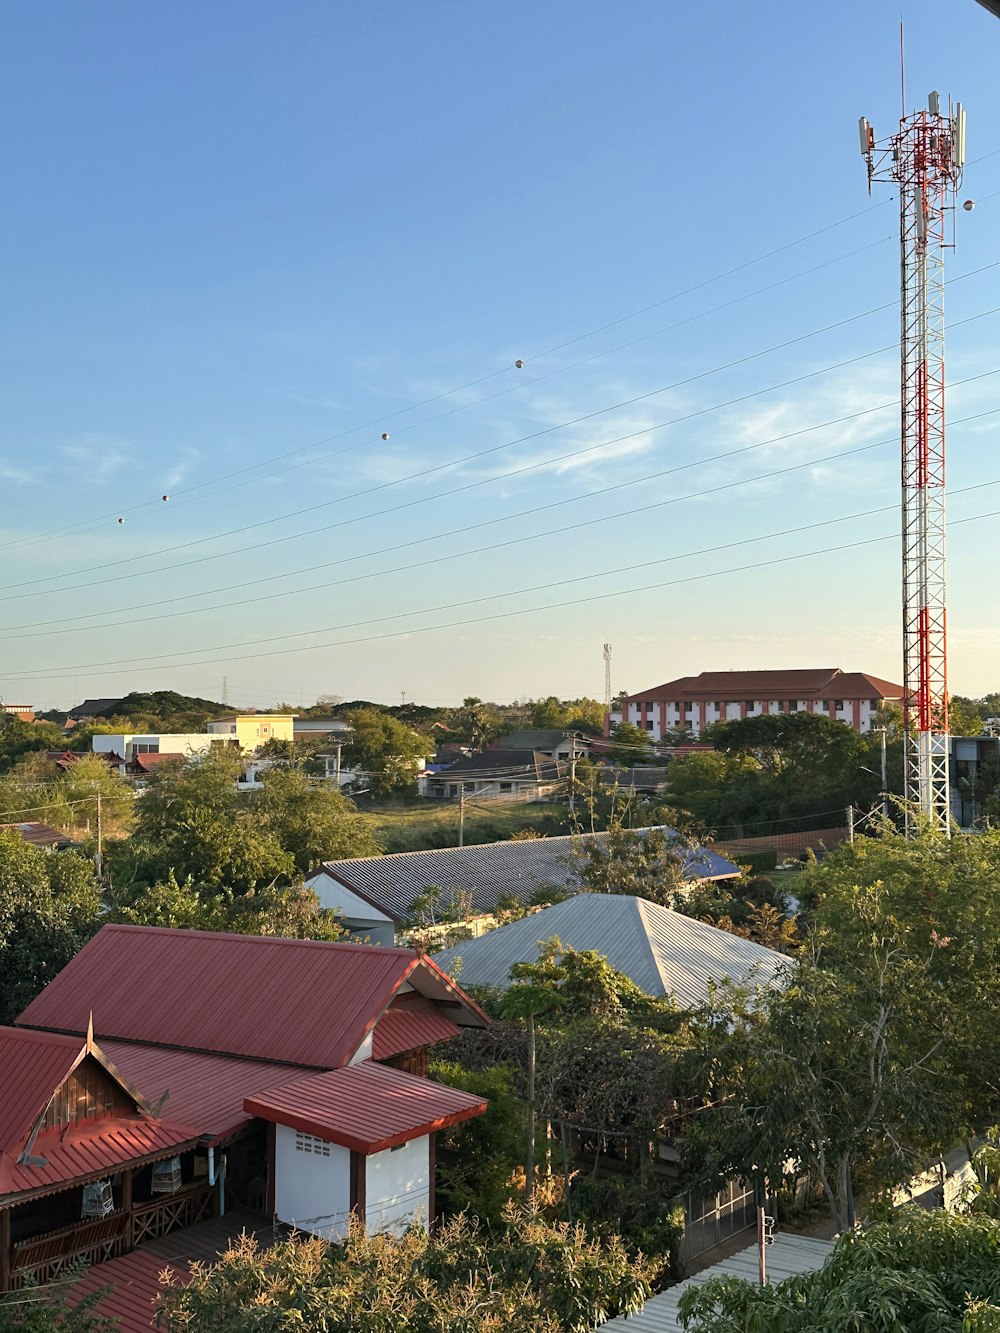 Luftaufnahme einer Stadt mit einem Funkturm im Hintergrund